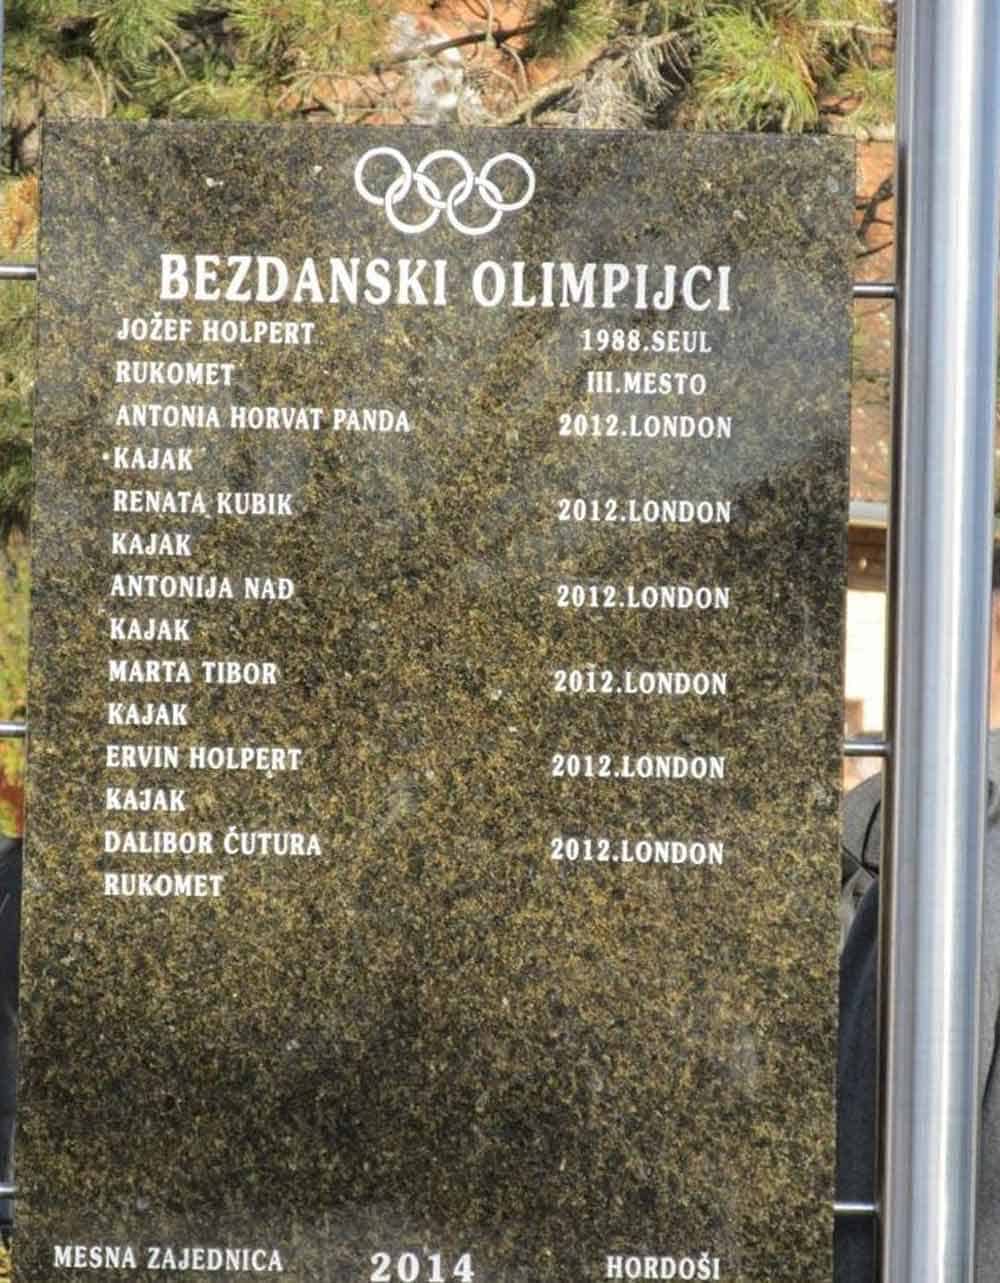 PONOS SELA: Tabla sa imenima bezdanskih olimpijaca